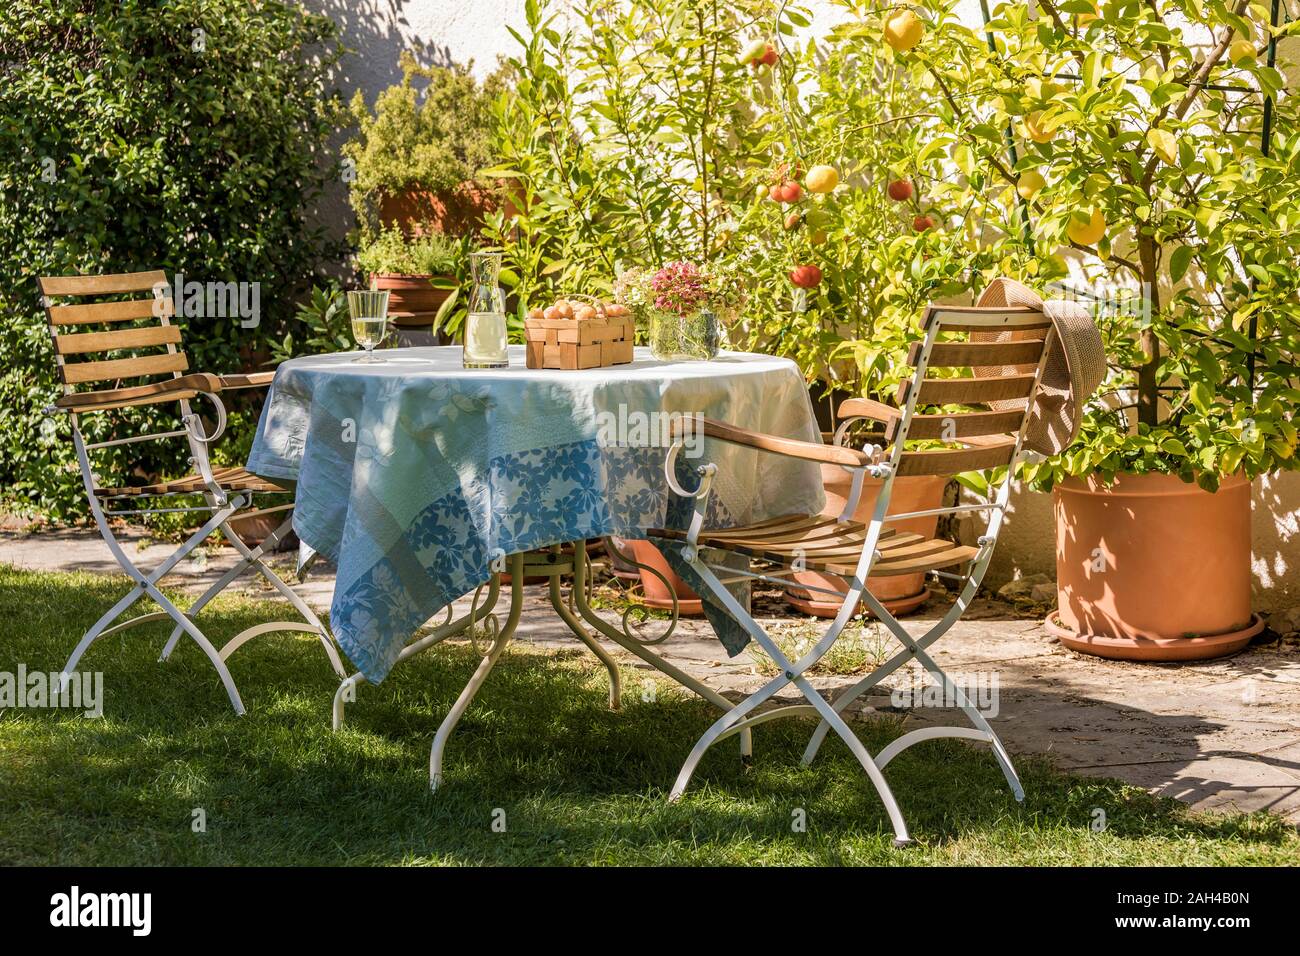 Alemania, Baden-Wurttemberg, Stuttgart, juego de mesa en el jardín residencial en frente de los limones y los tomates en macetas Foto de stock